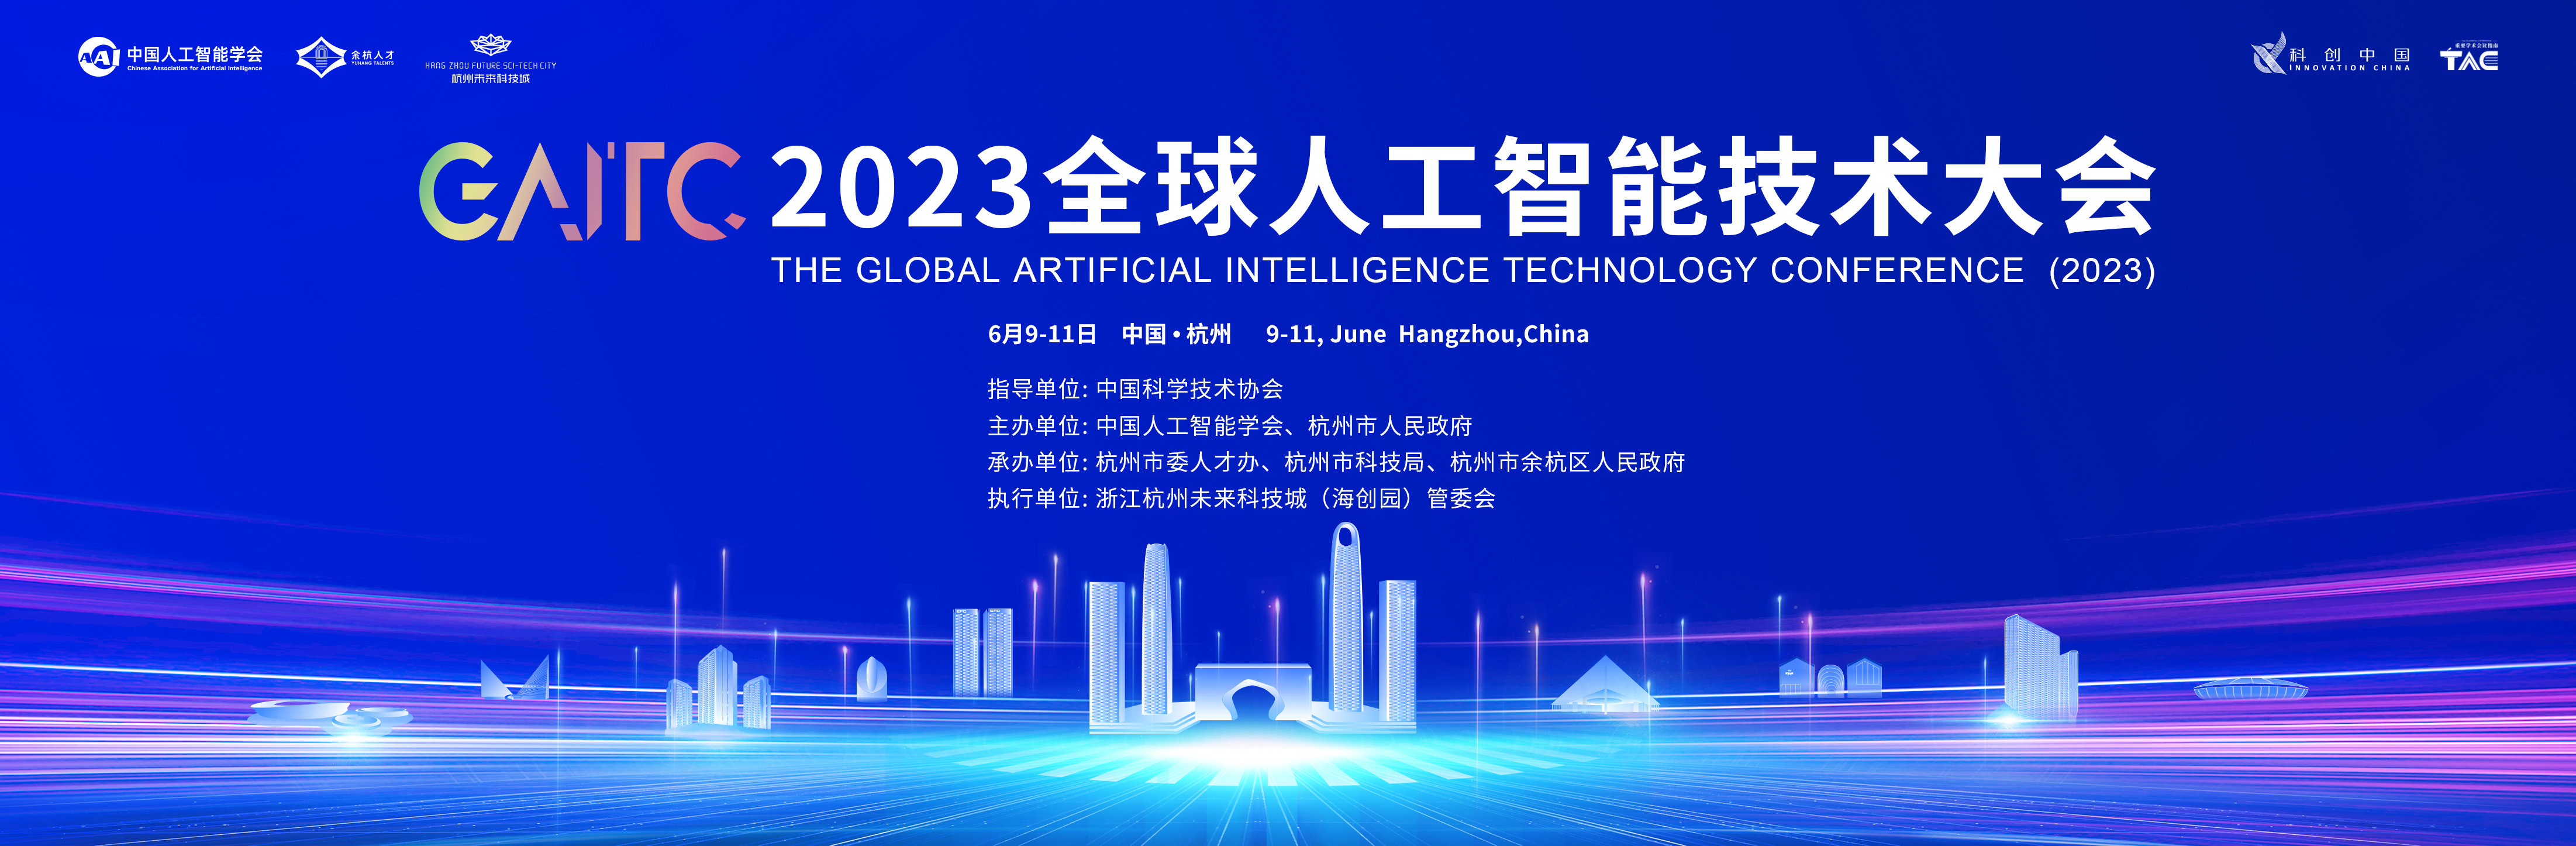 2023全球人工智能大会